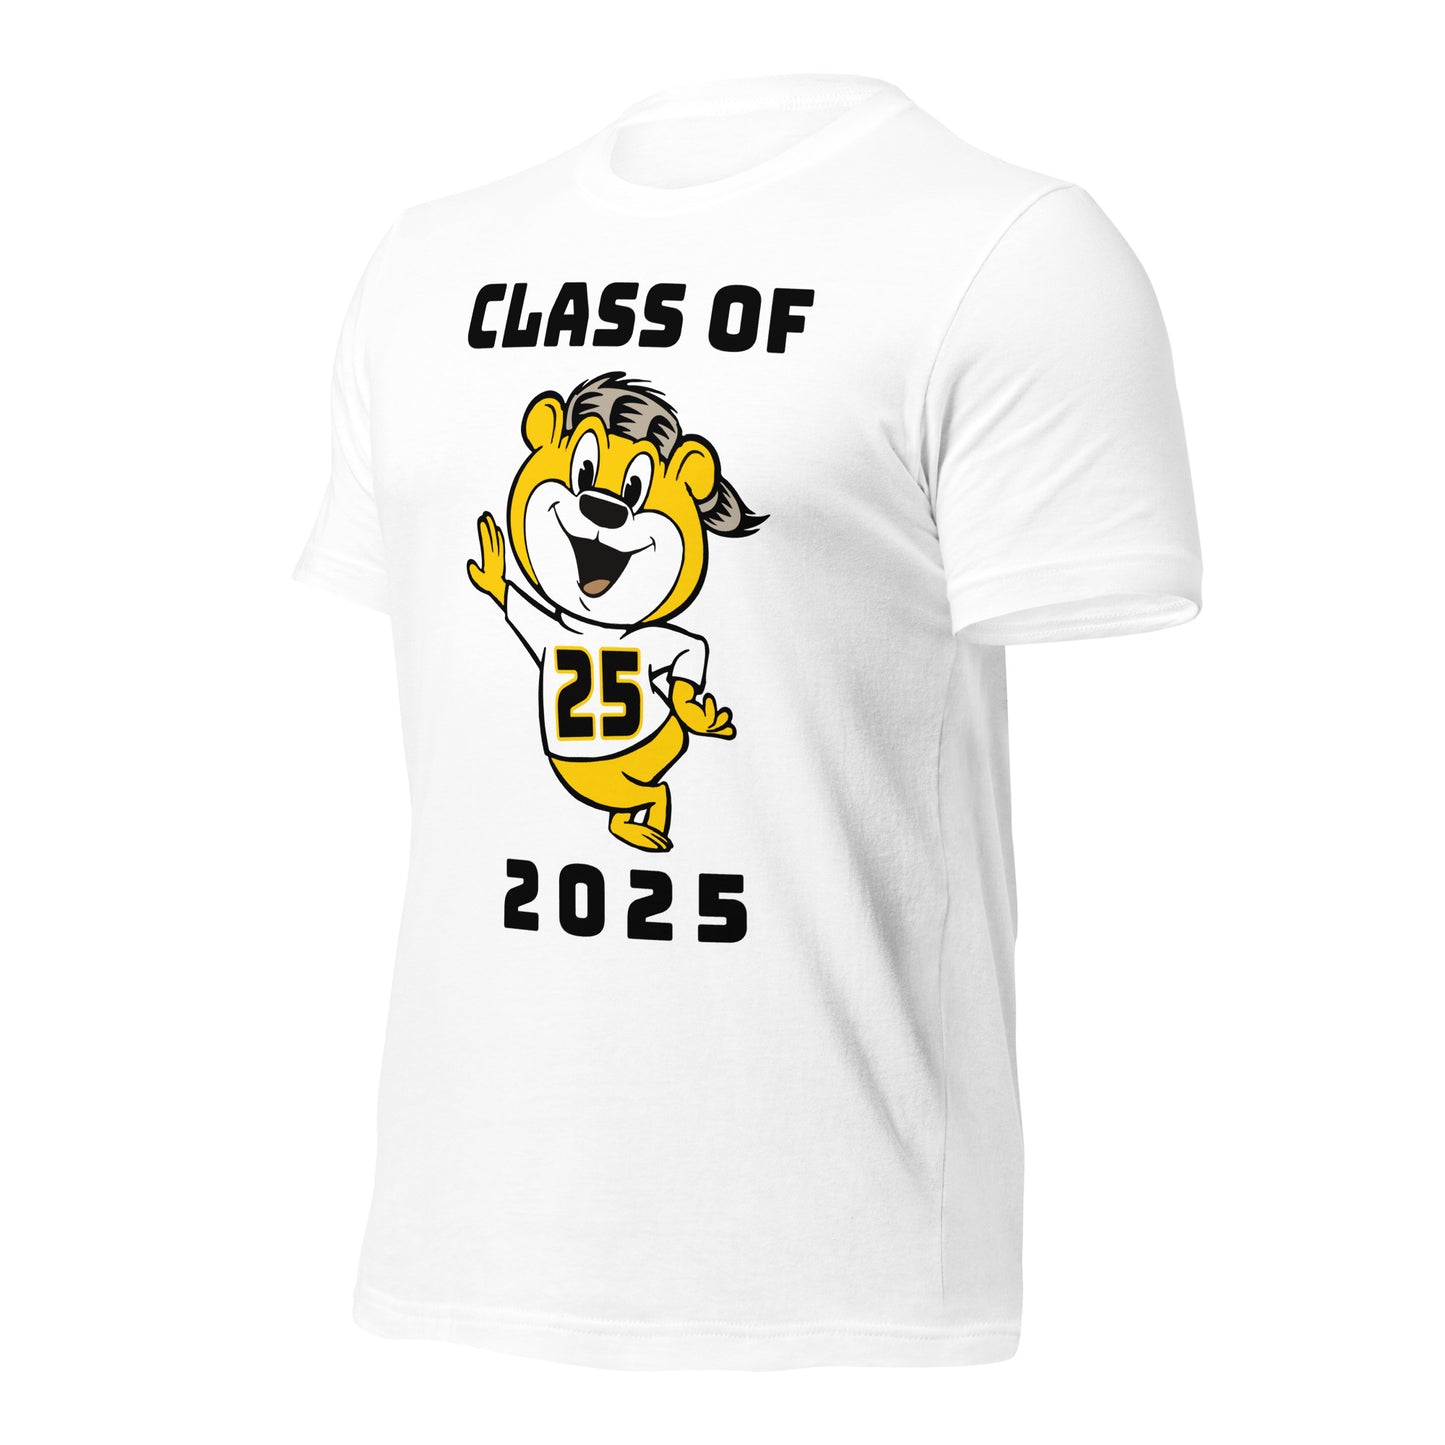 CLASS OF 2025 - BELLA+CANVAS - Unisex t-shirt